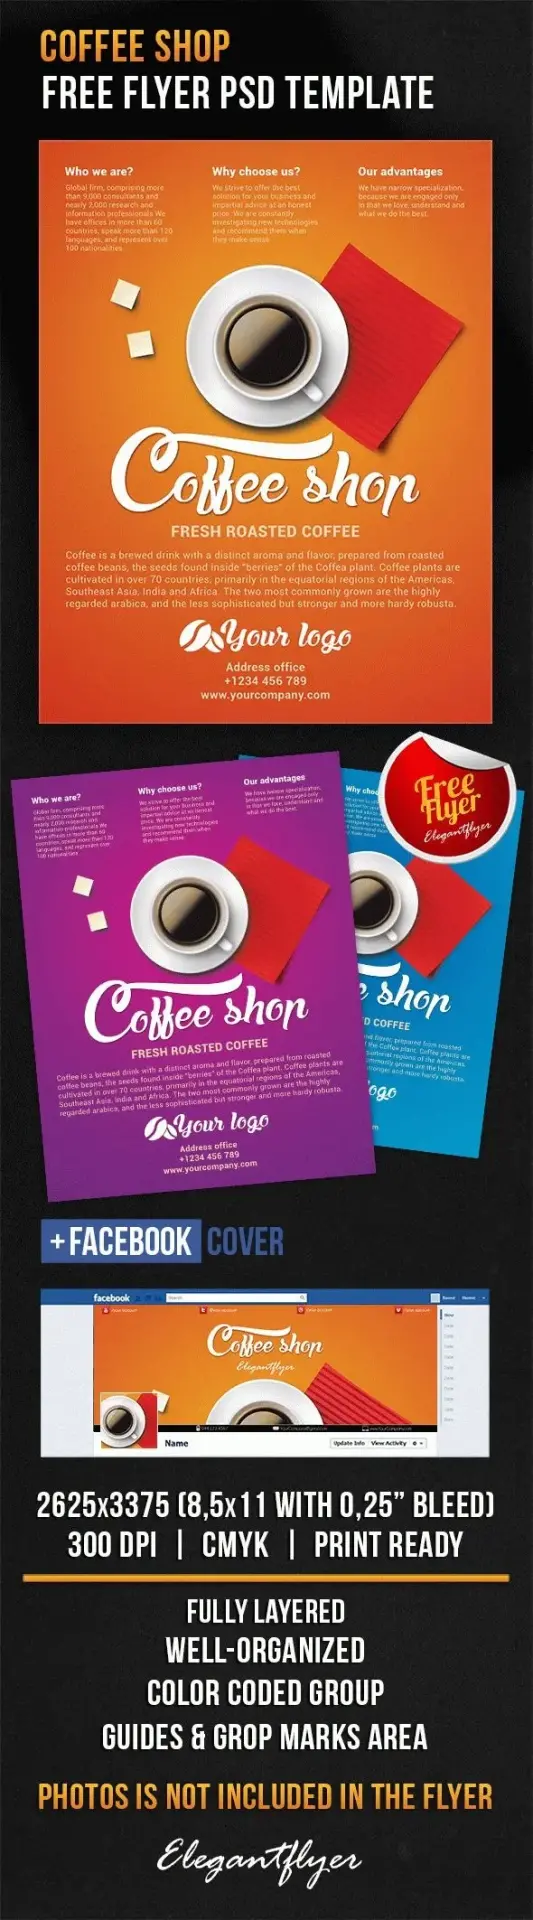 Bdw ressource psd gratuite coffee shop flyer